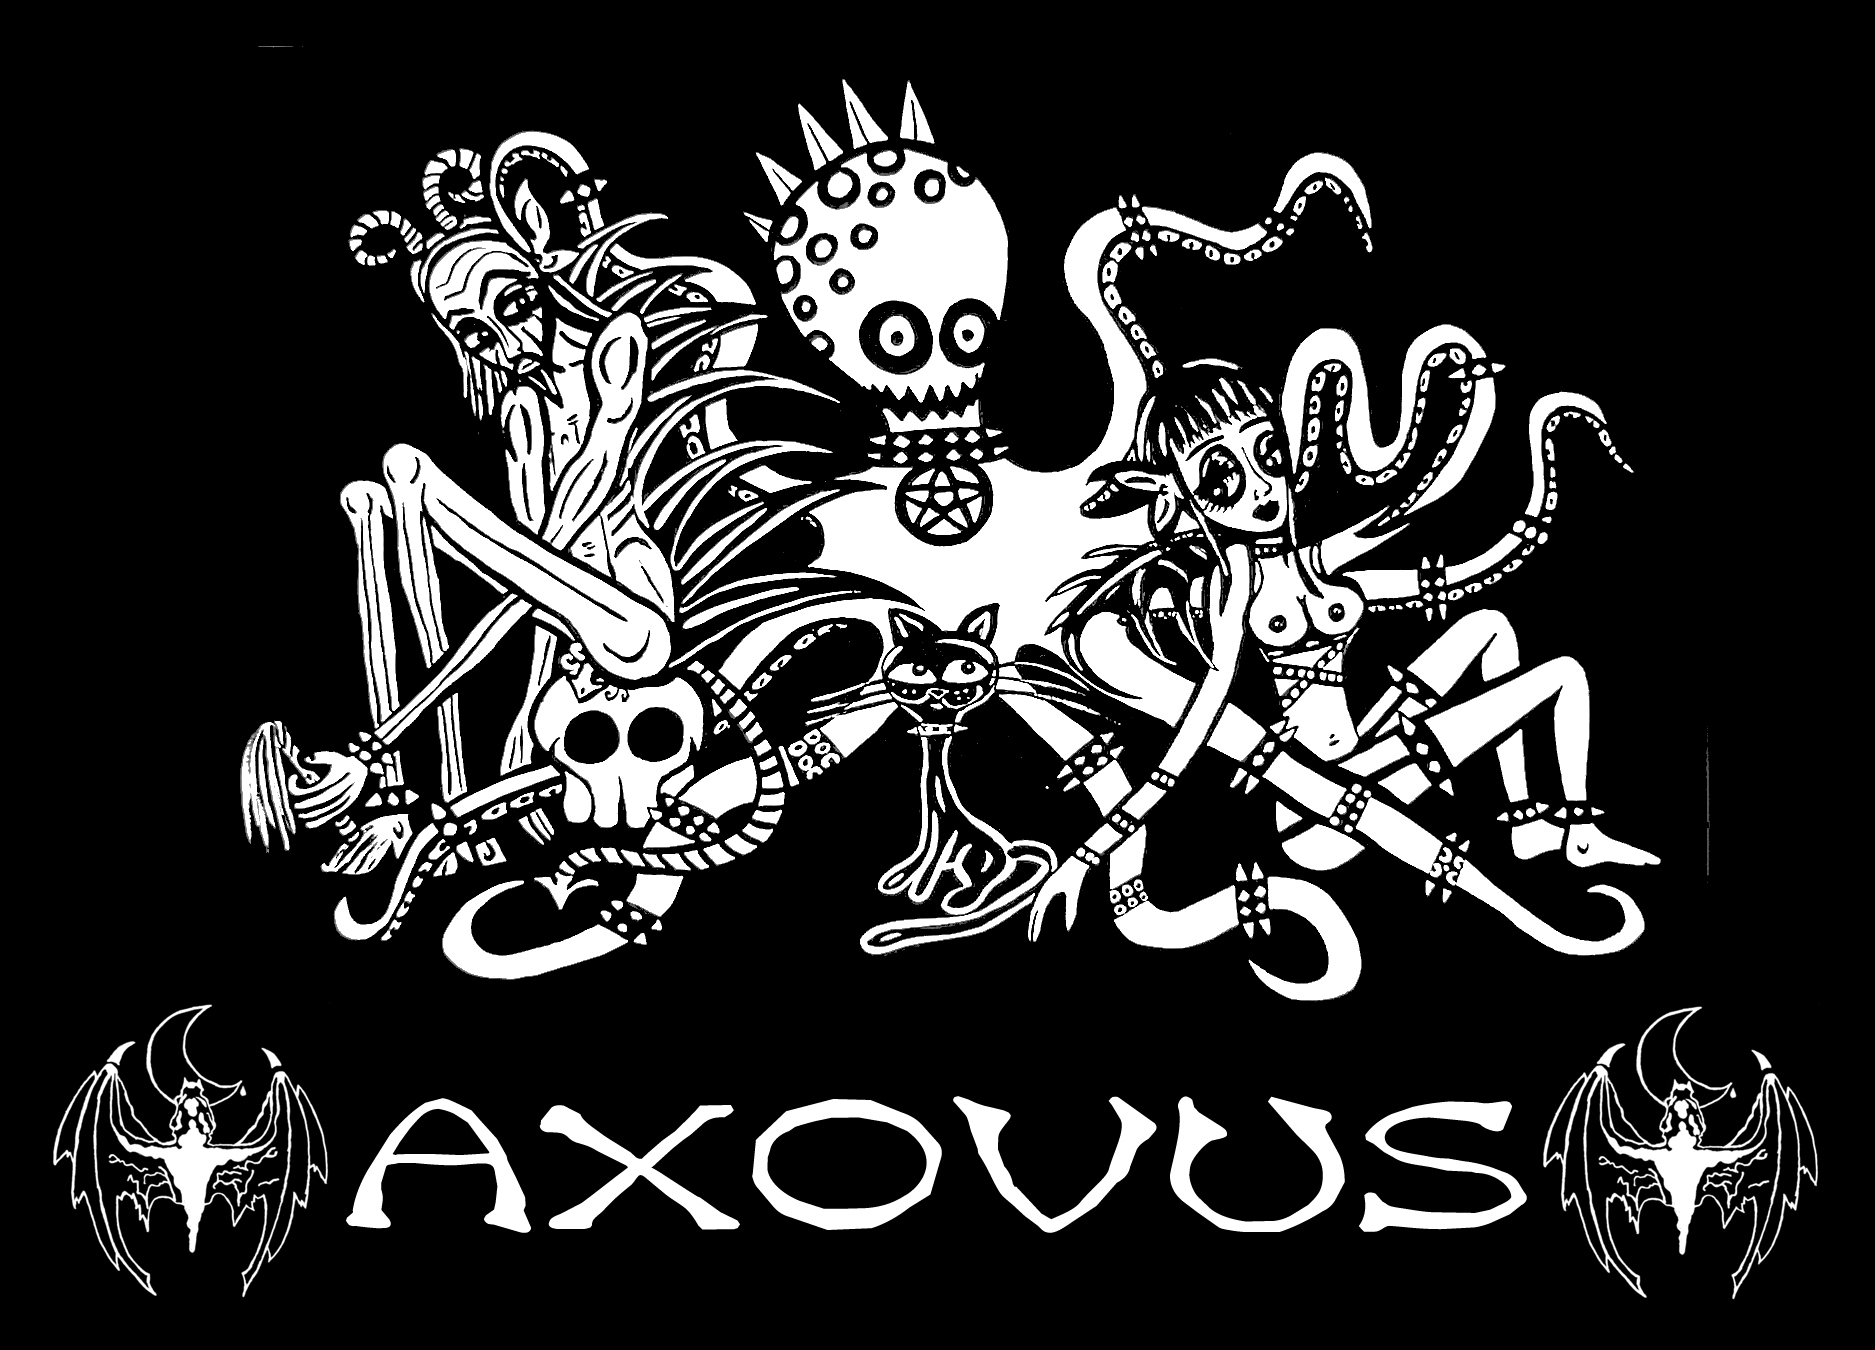 Axovus